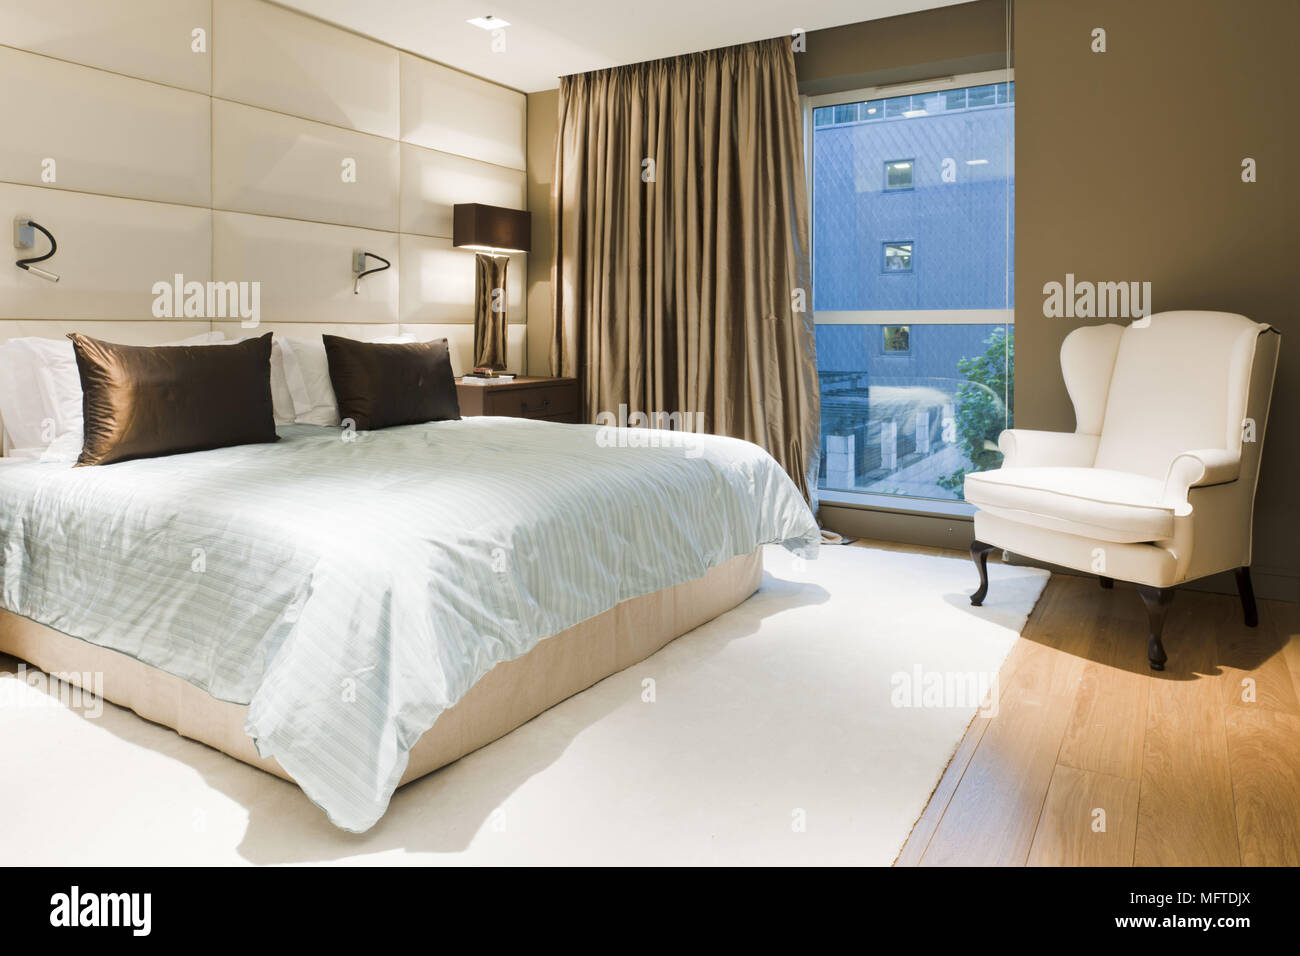 Poltrona ai piedi del letto matrimoniale in camera da letto moderna Foto  stock - Alamy